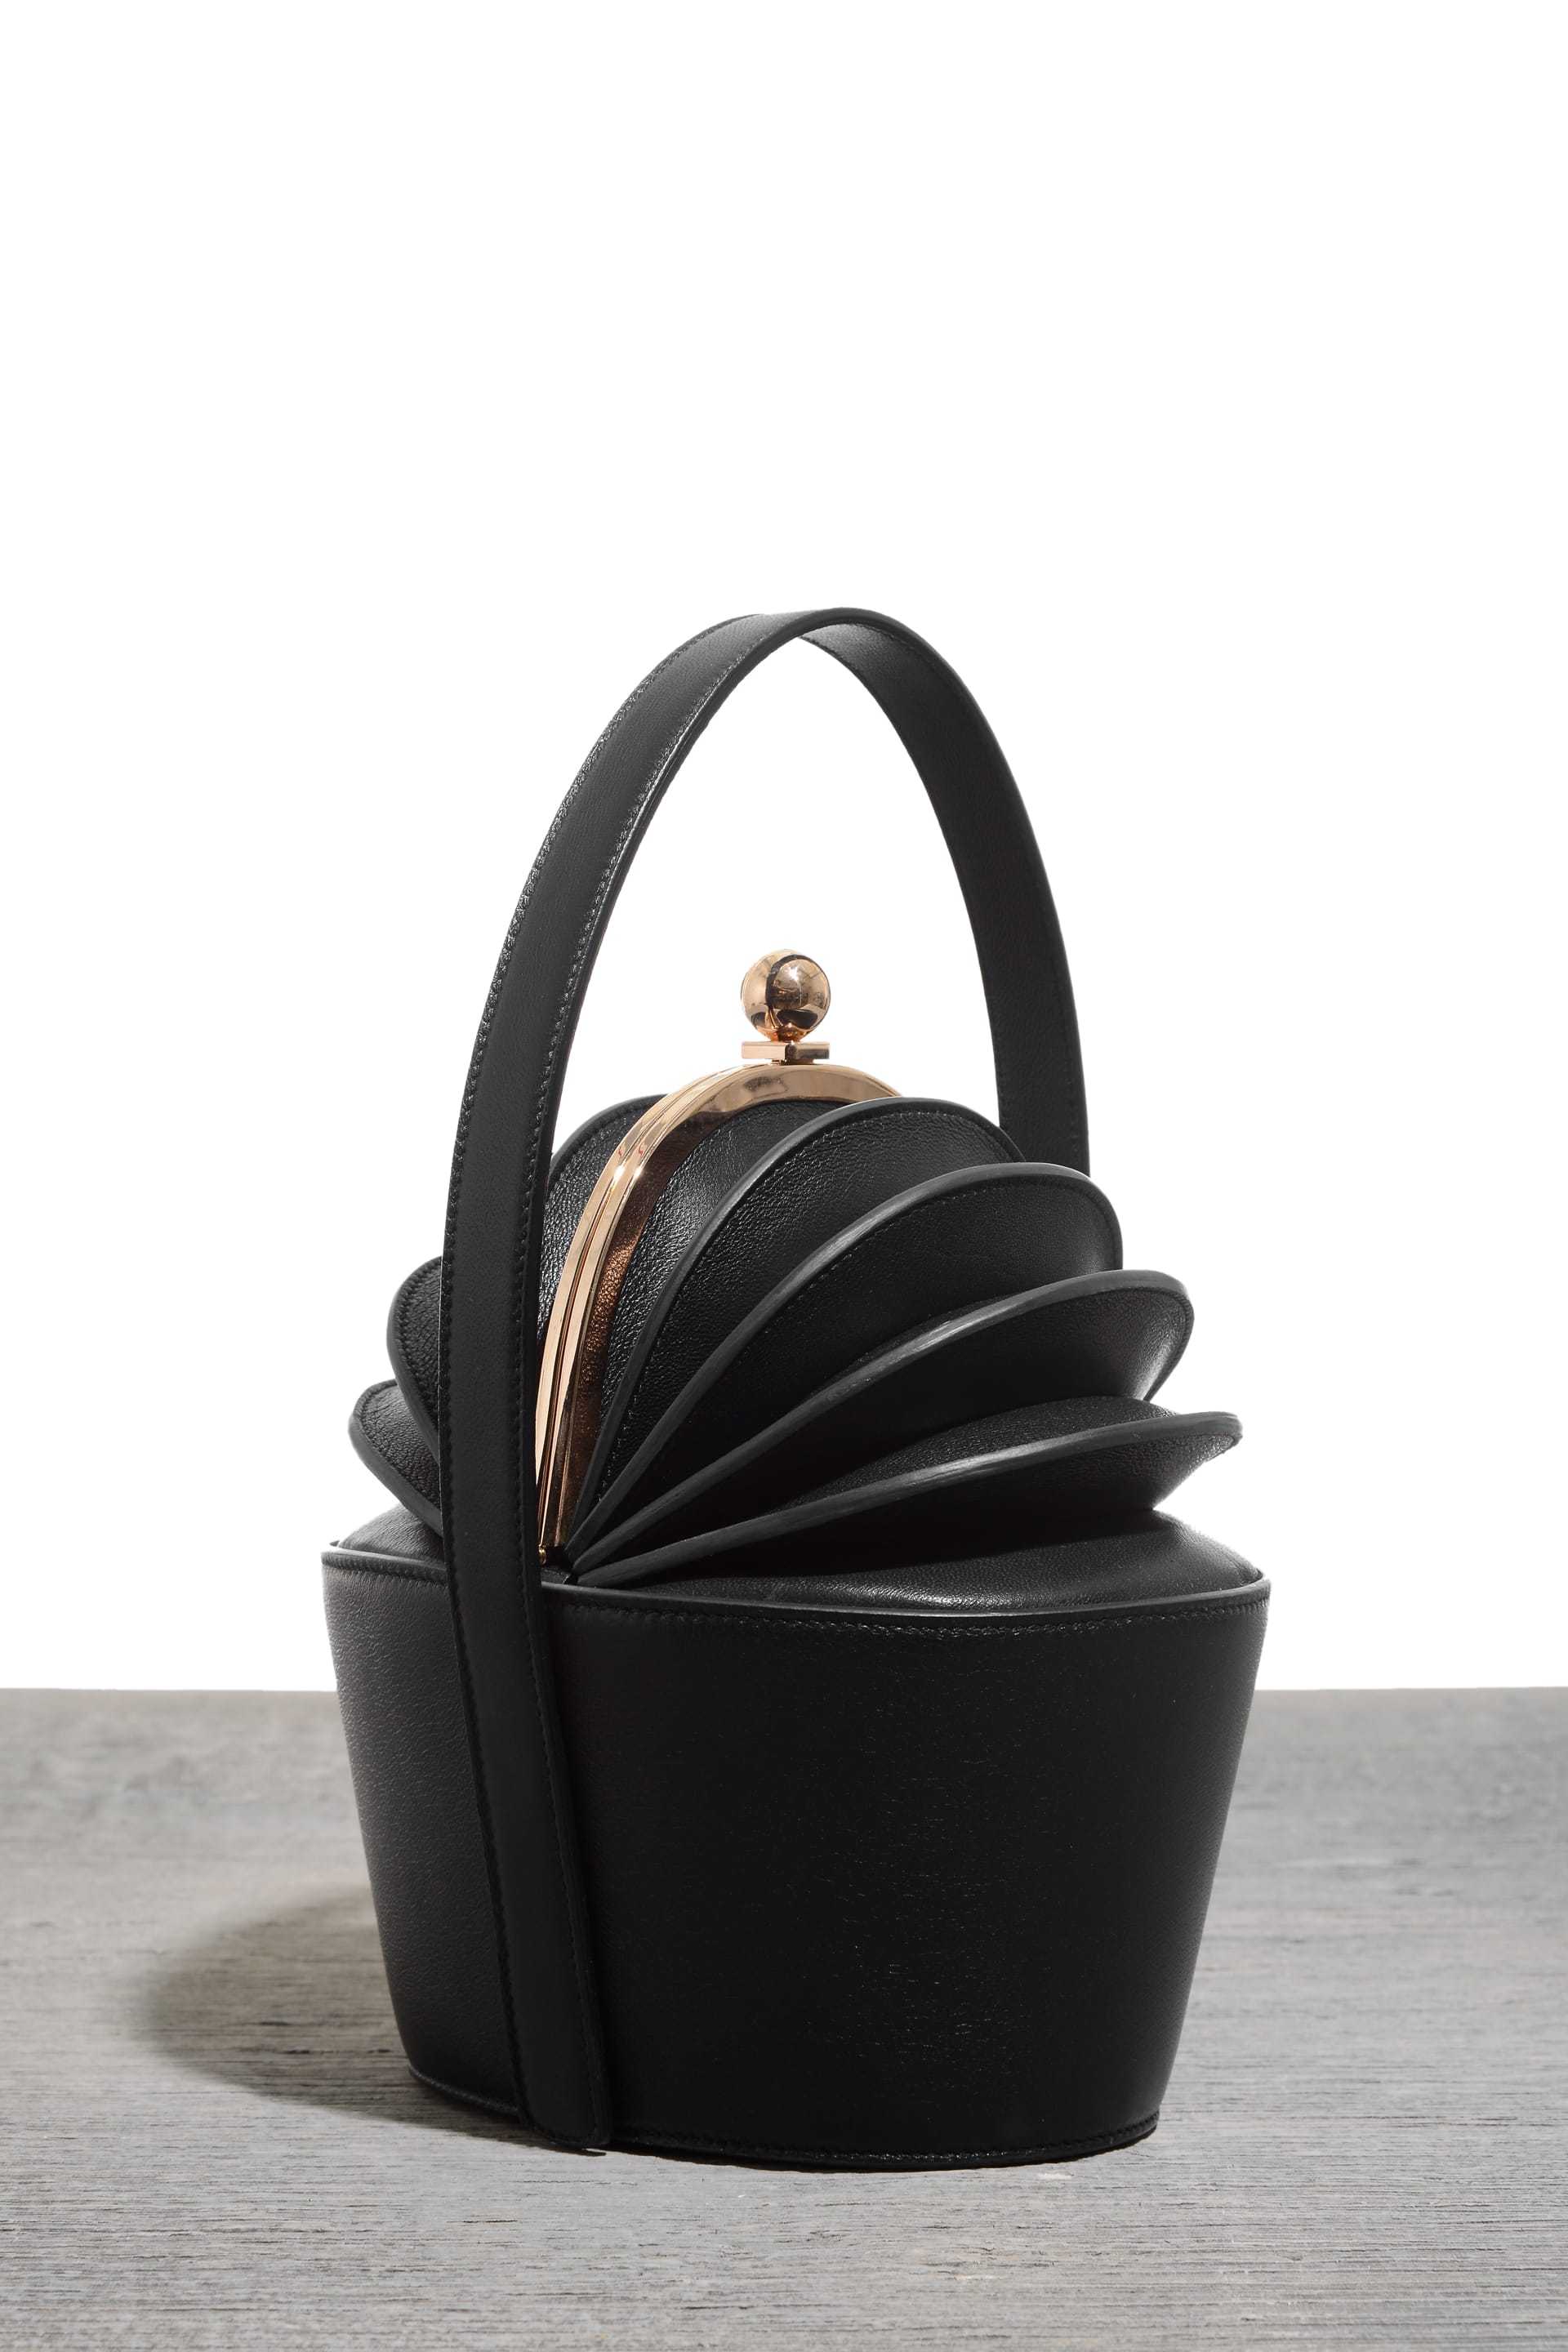  Ella bag, $2,750, at Bergdorf Goodman and Net-a-Porter 